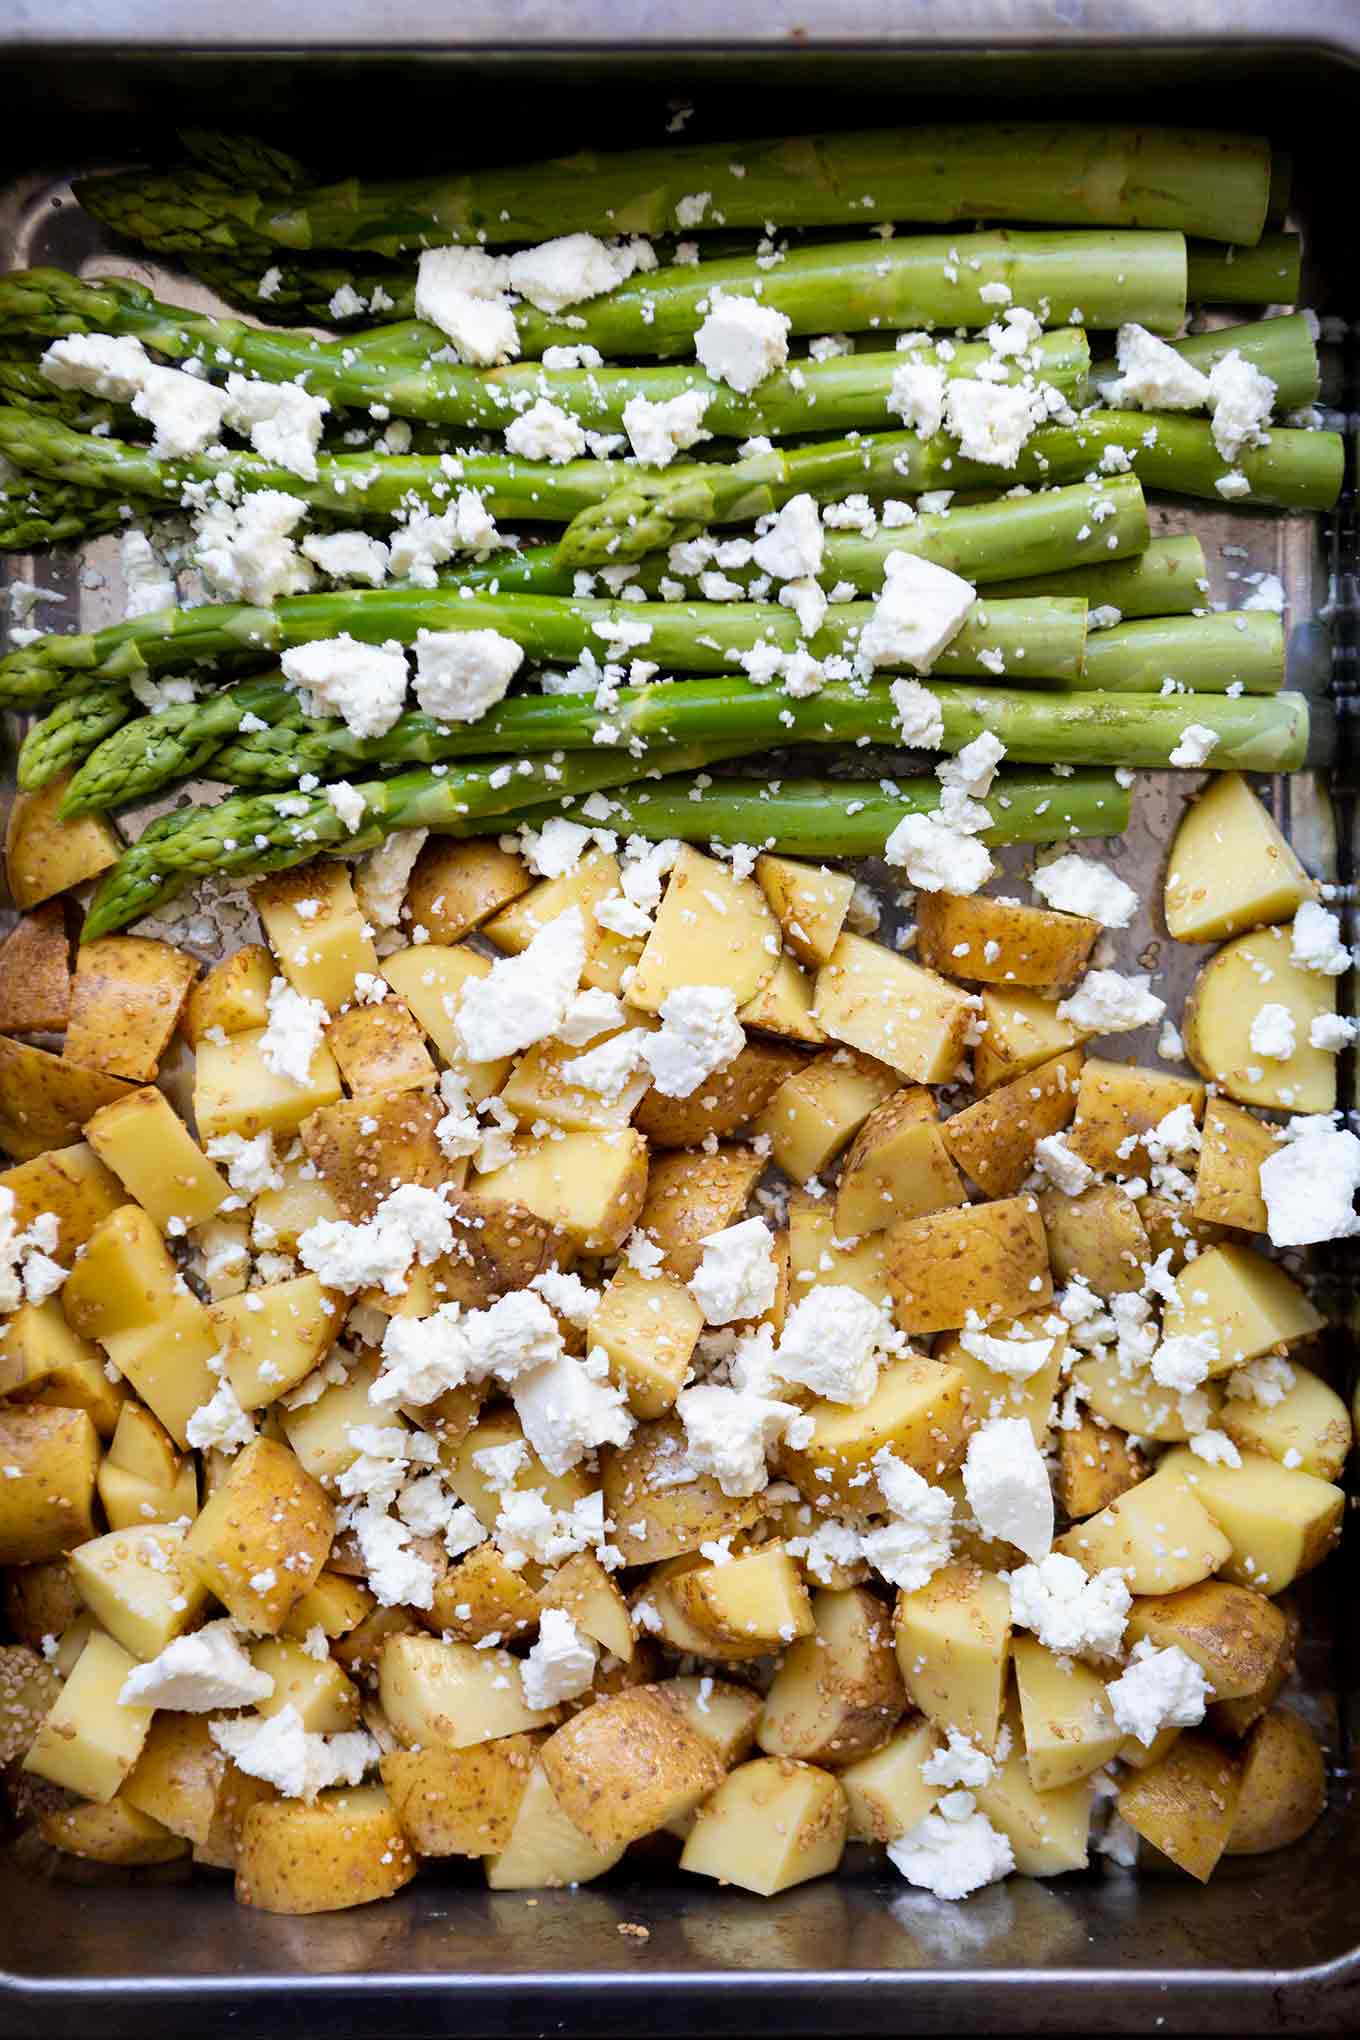 Sesam-Ofenkartoffeln mit grünem Spargel und Feta. Dieses schnelle und einfache 5-Zutaten Rezept aus dem Ofen ist der Knaller! Unbedingt probieren! - Kochkarussell.com #ofenkartoffeln #spargel #rezept #schnellundeinfach 